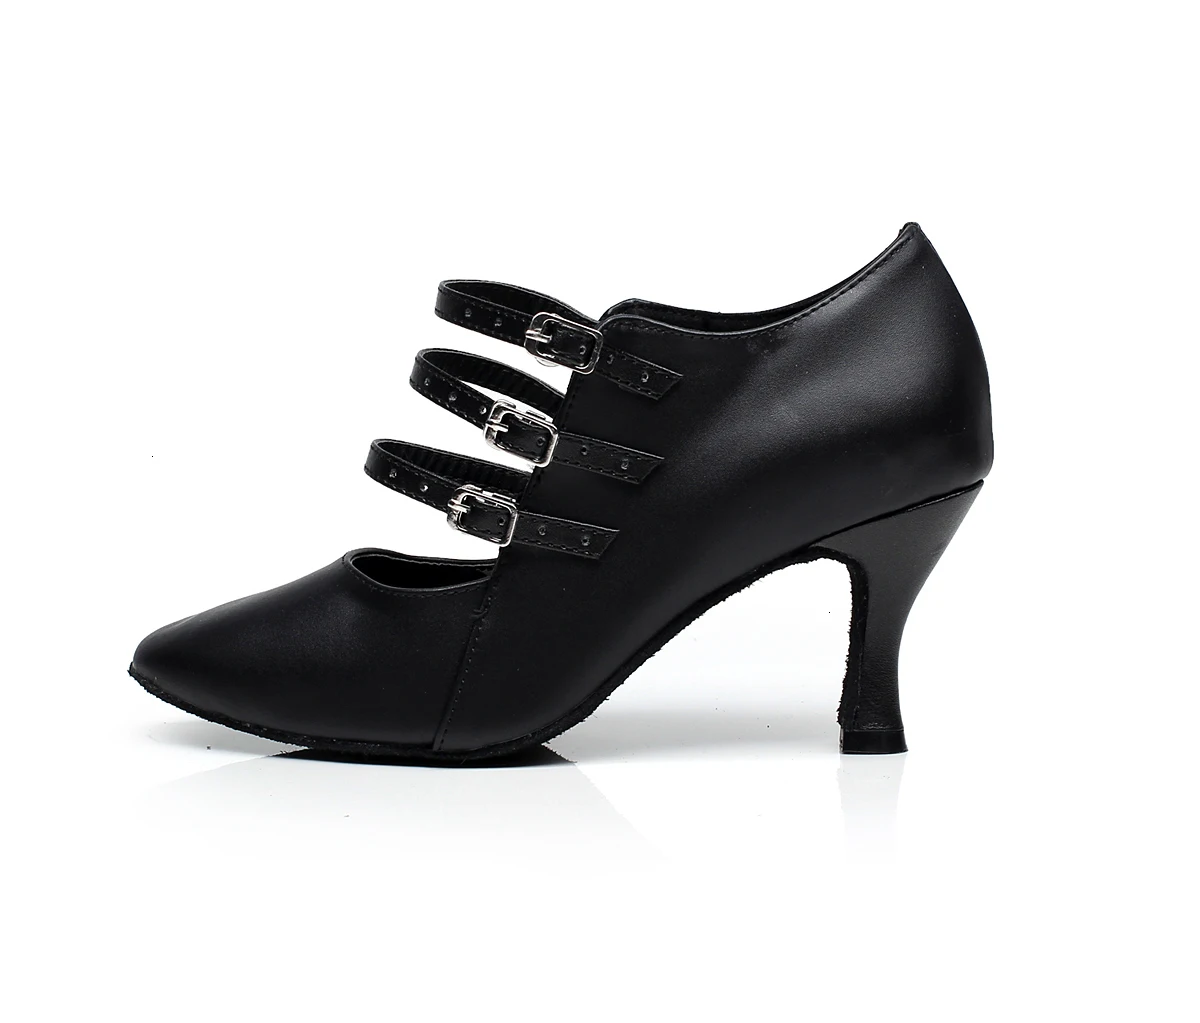 Обувь для занятий сальсой на квадратном каблуке; обувь для танго и танцев для женщин; скидки; распродажа; женские туфли-лодочки на высоком каблуке 7,5 см В чешском стиле